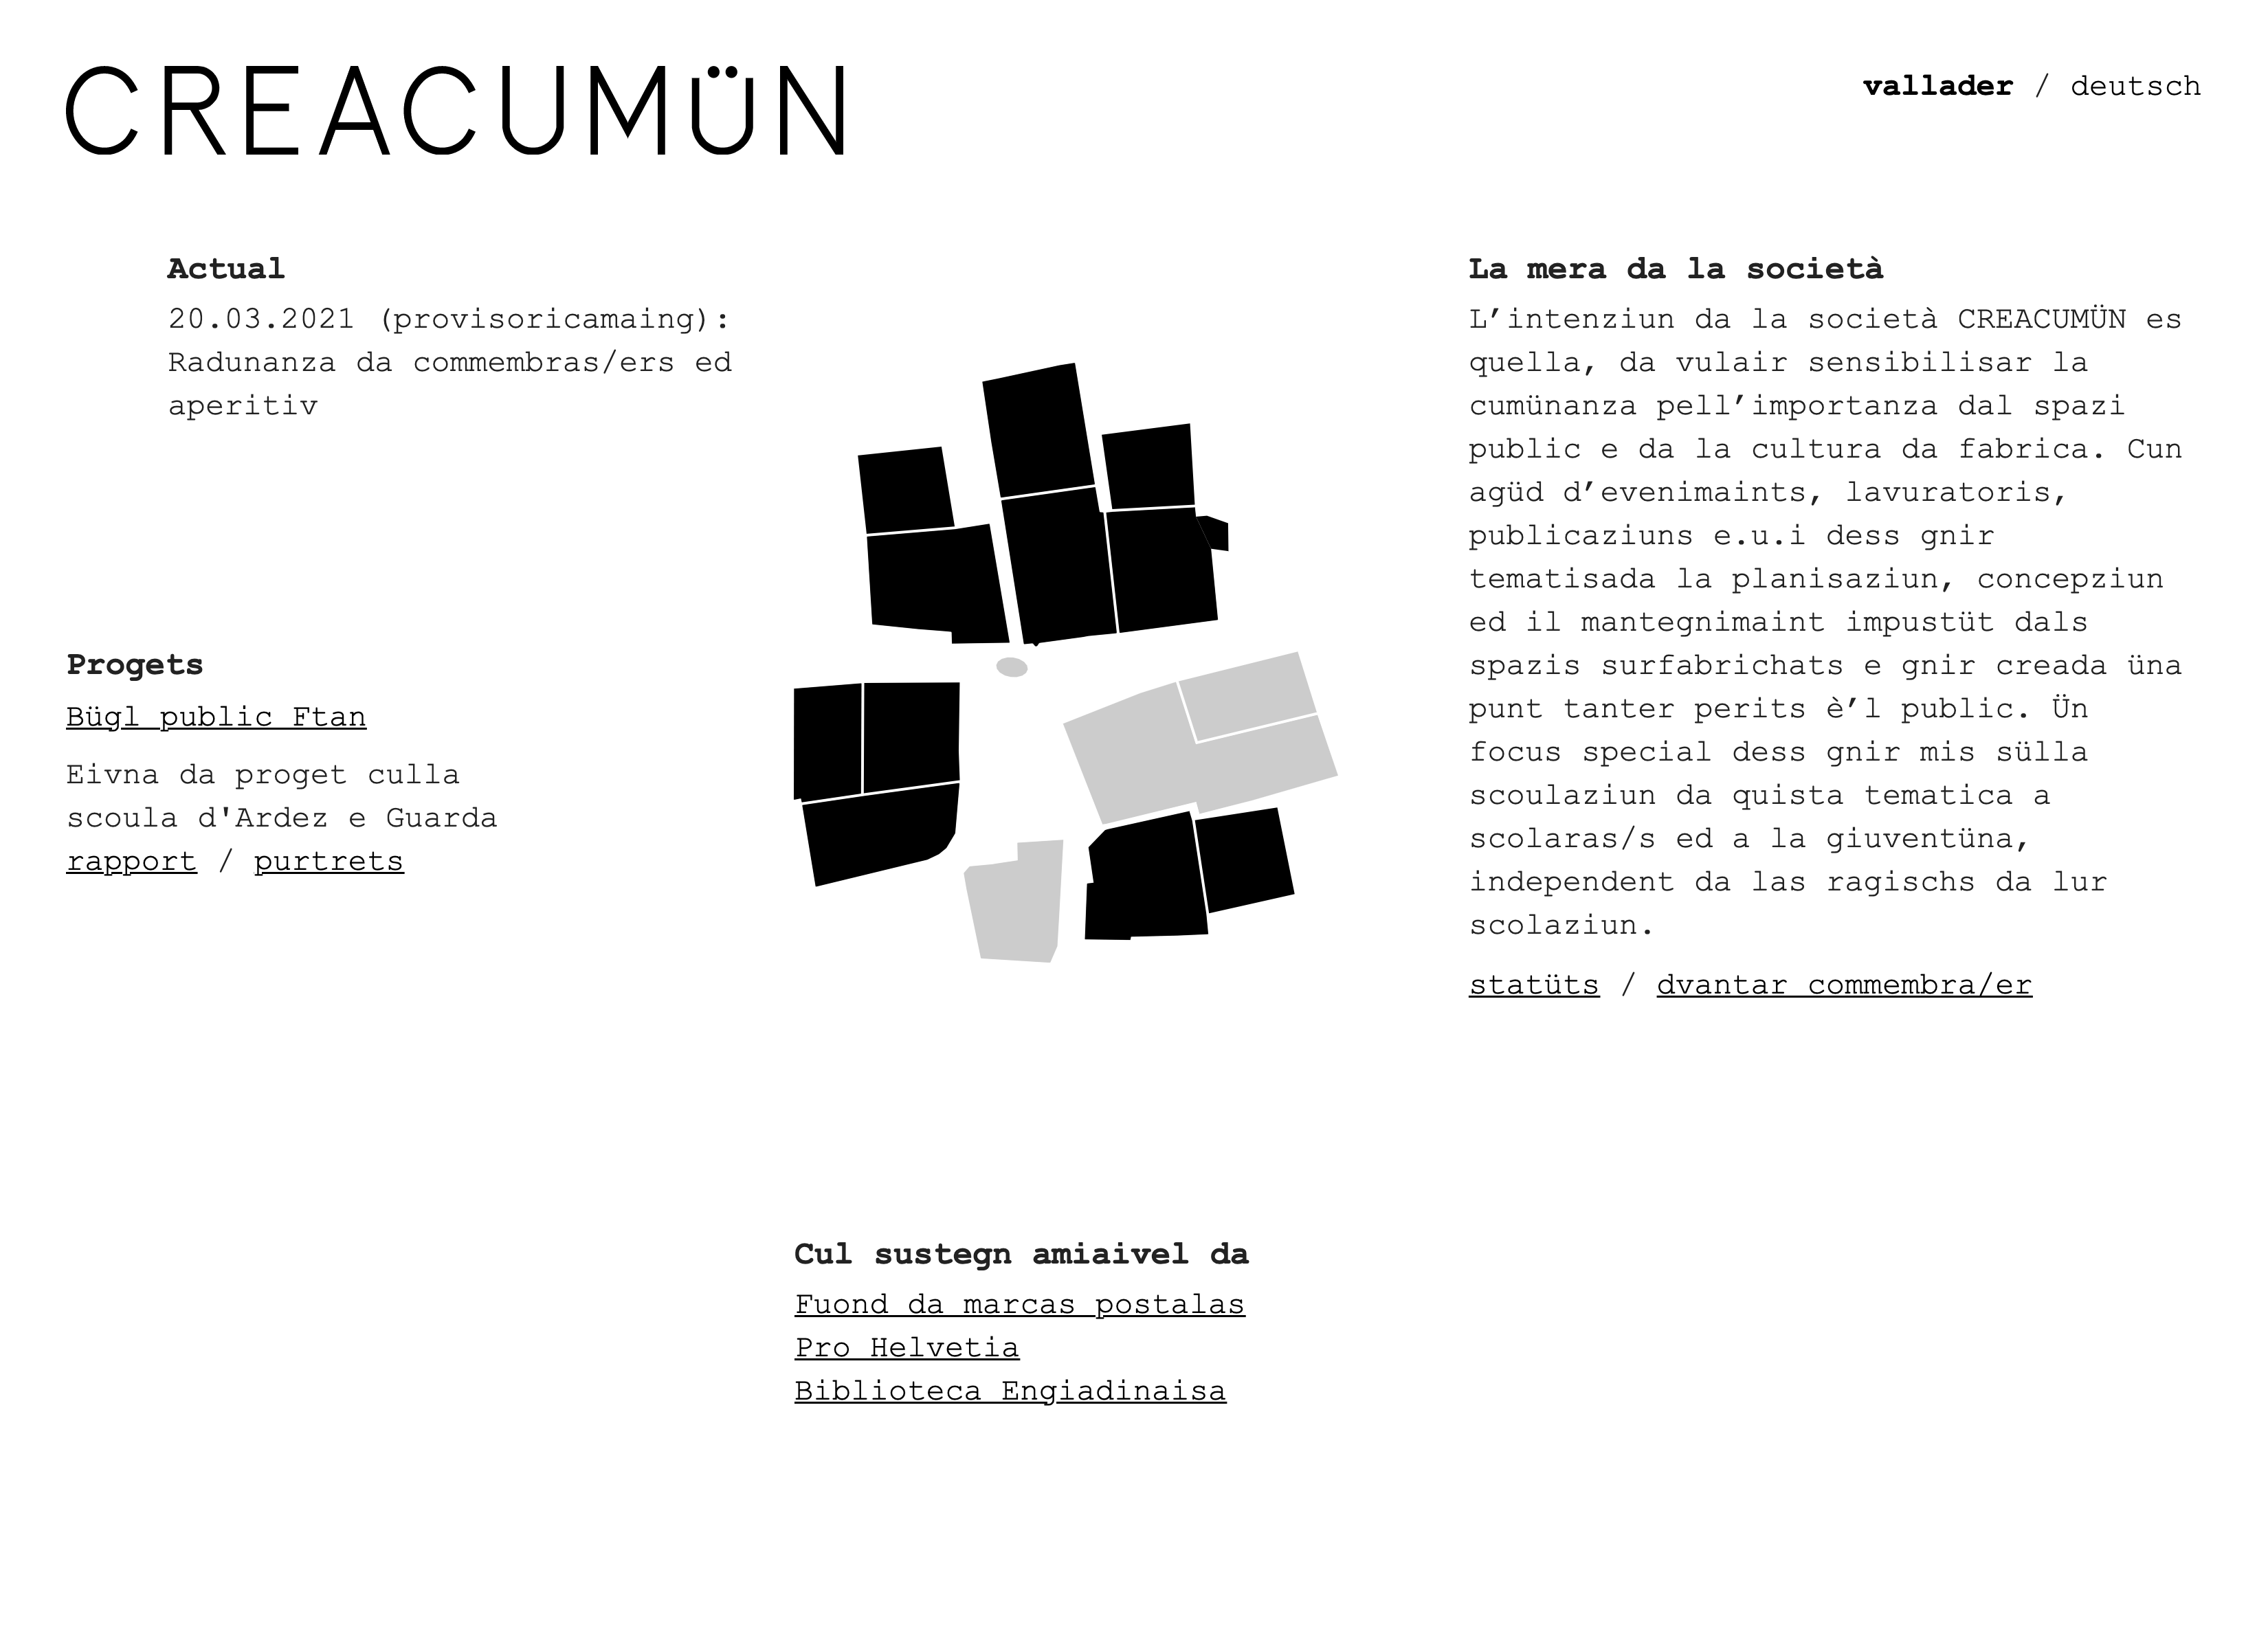 Screenshot of the 'Creacumün' website